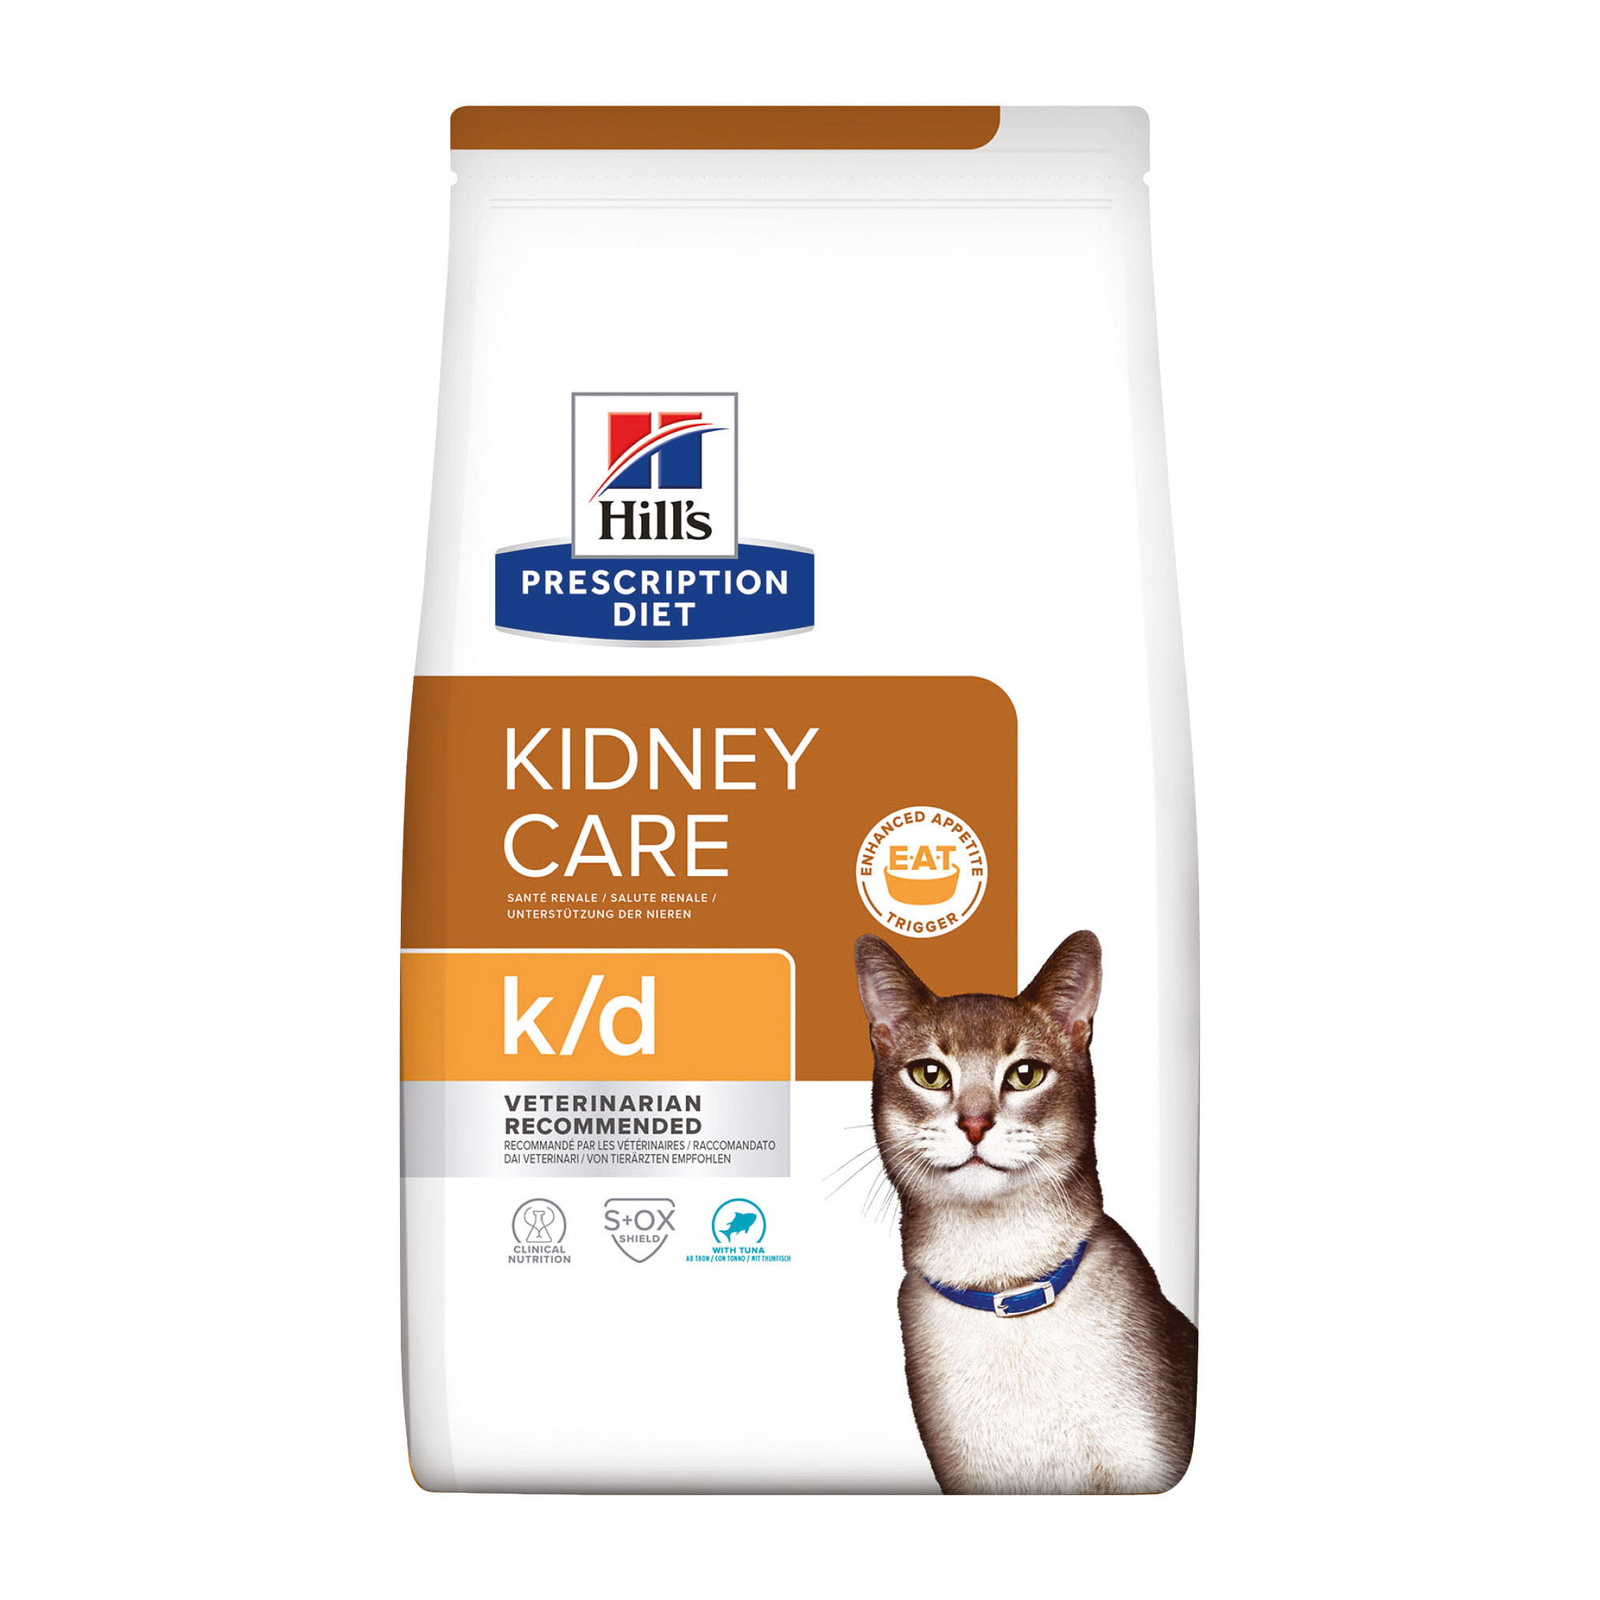 Hill's Prescription Diet k/d Kidney Care сухой диетический, для кошек при профилактике заболеваний почек, с тунцом (1,5 кг)